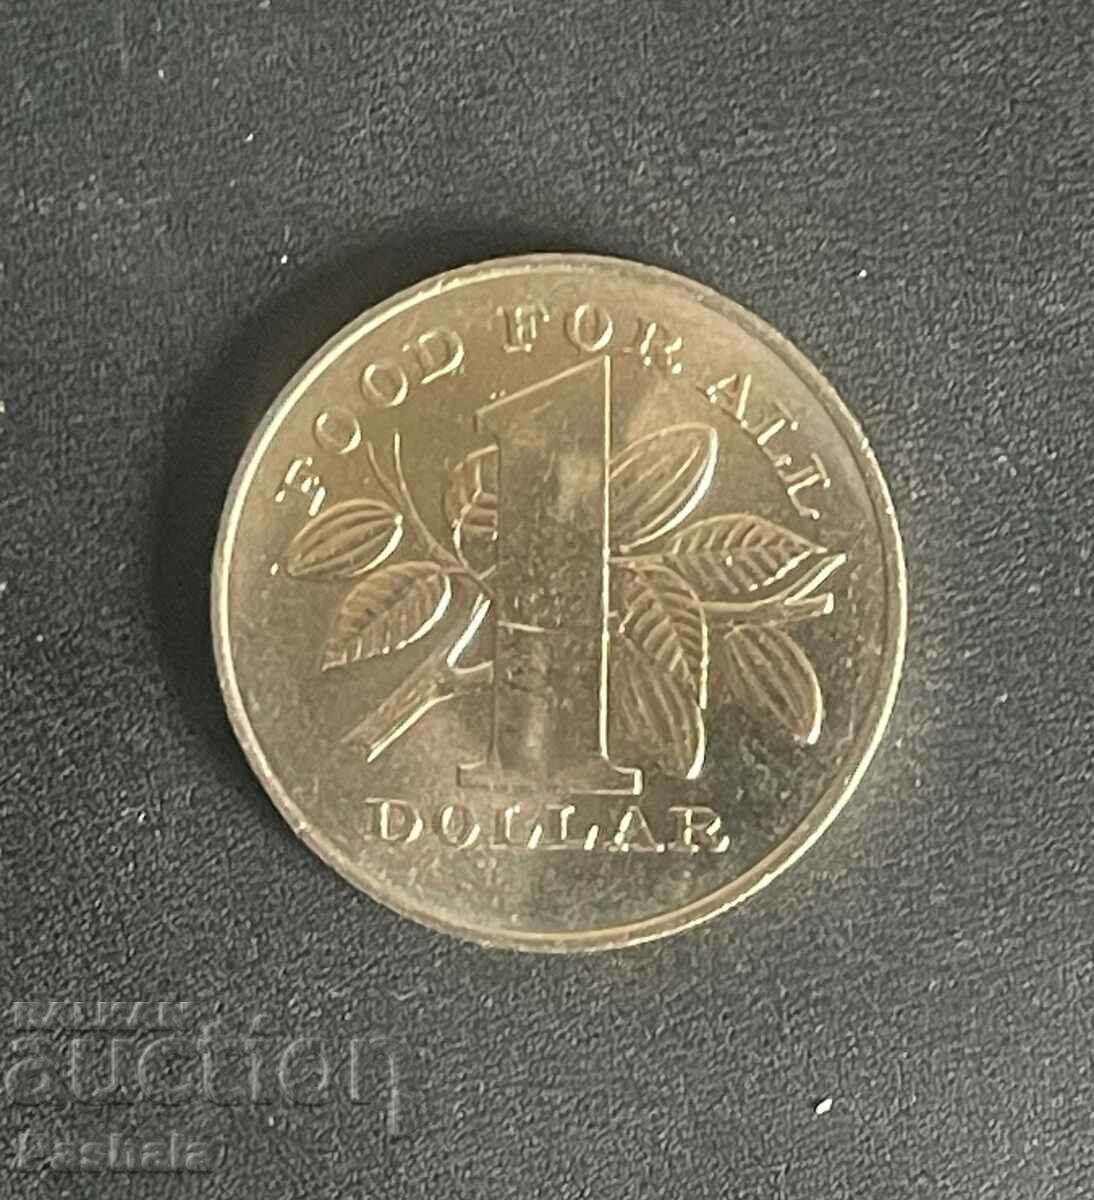 Trinidad and Tobago $1 1979